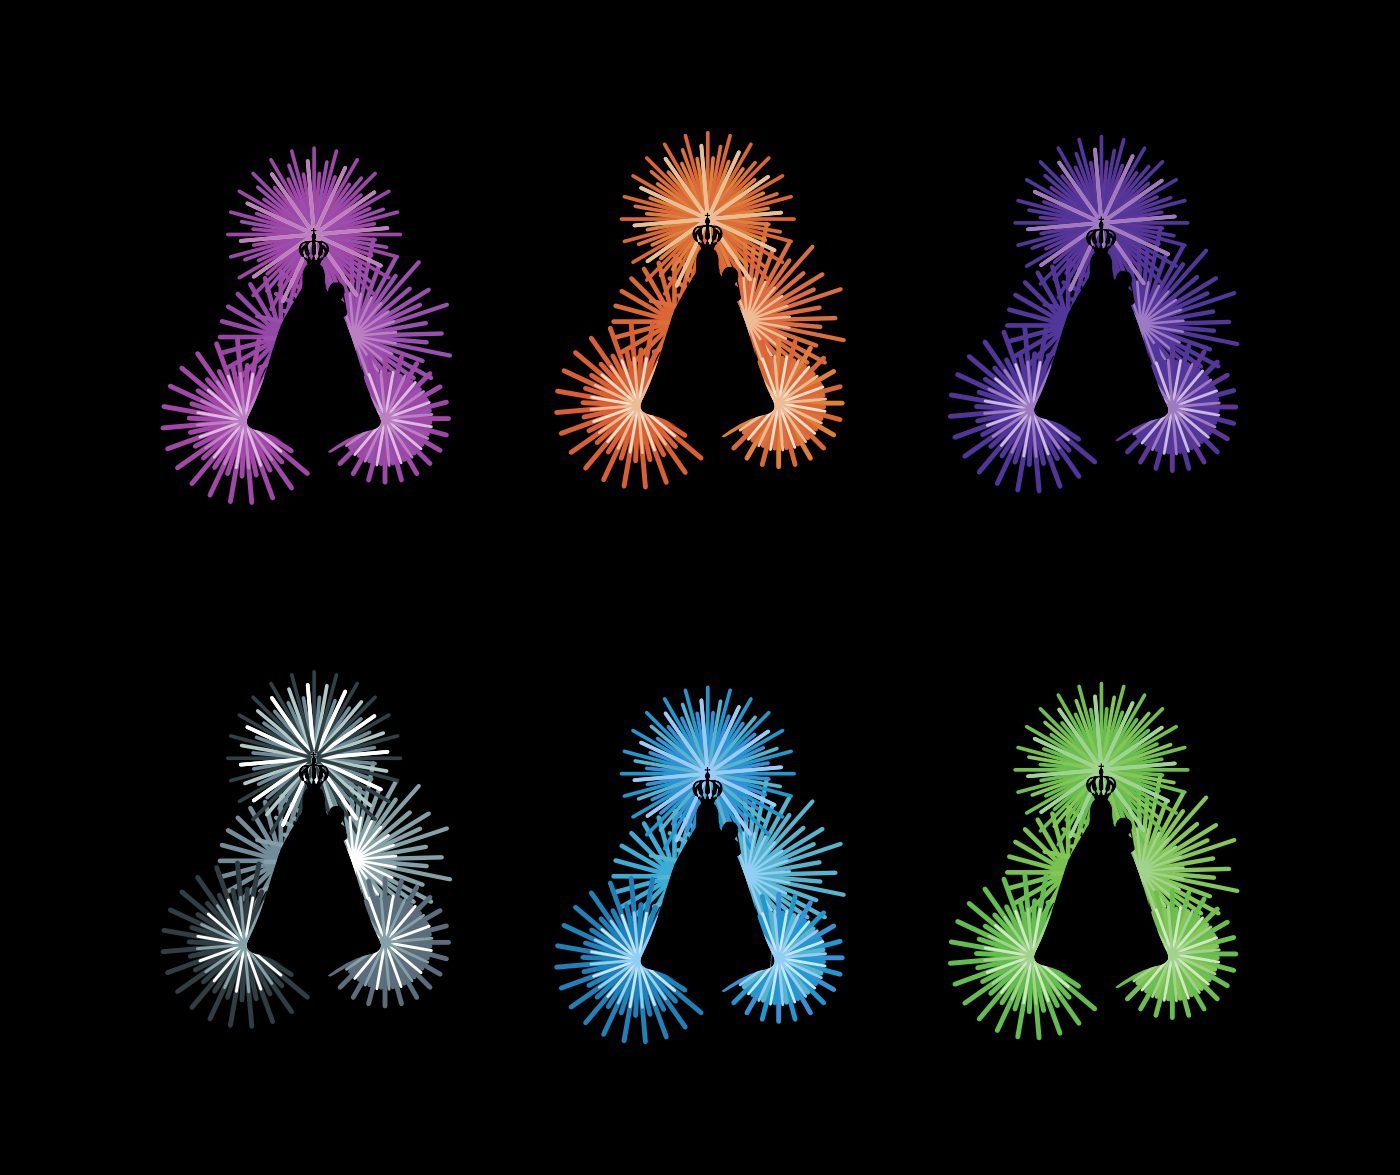 Versões coloridas do símbolo da marca Festas da Maia sobre fundo preto | Brandium